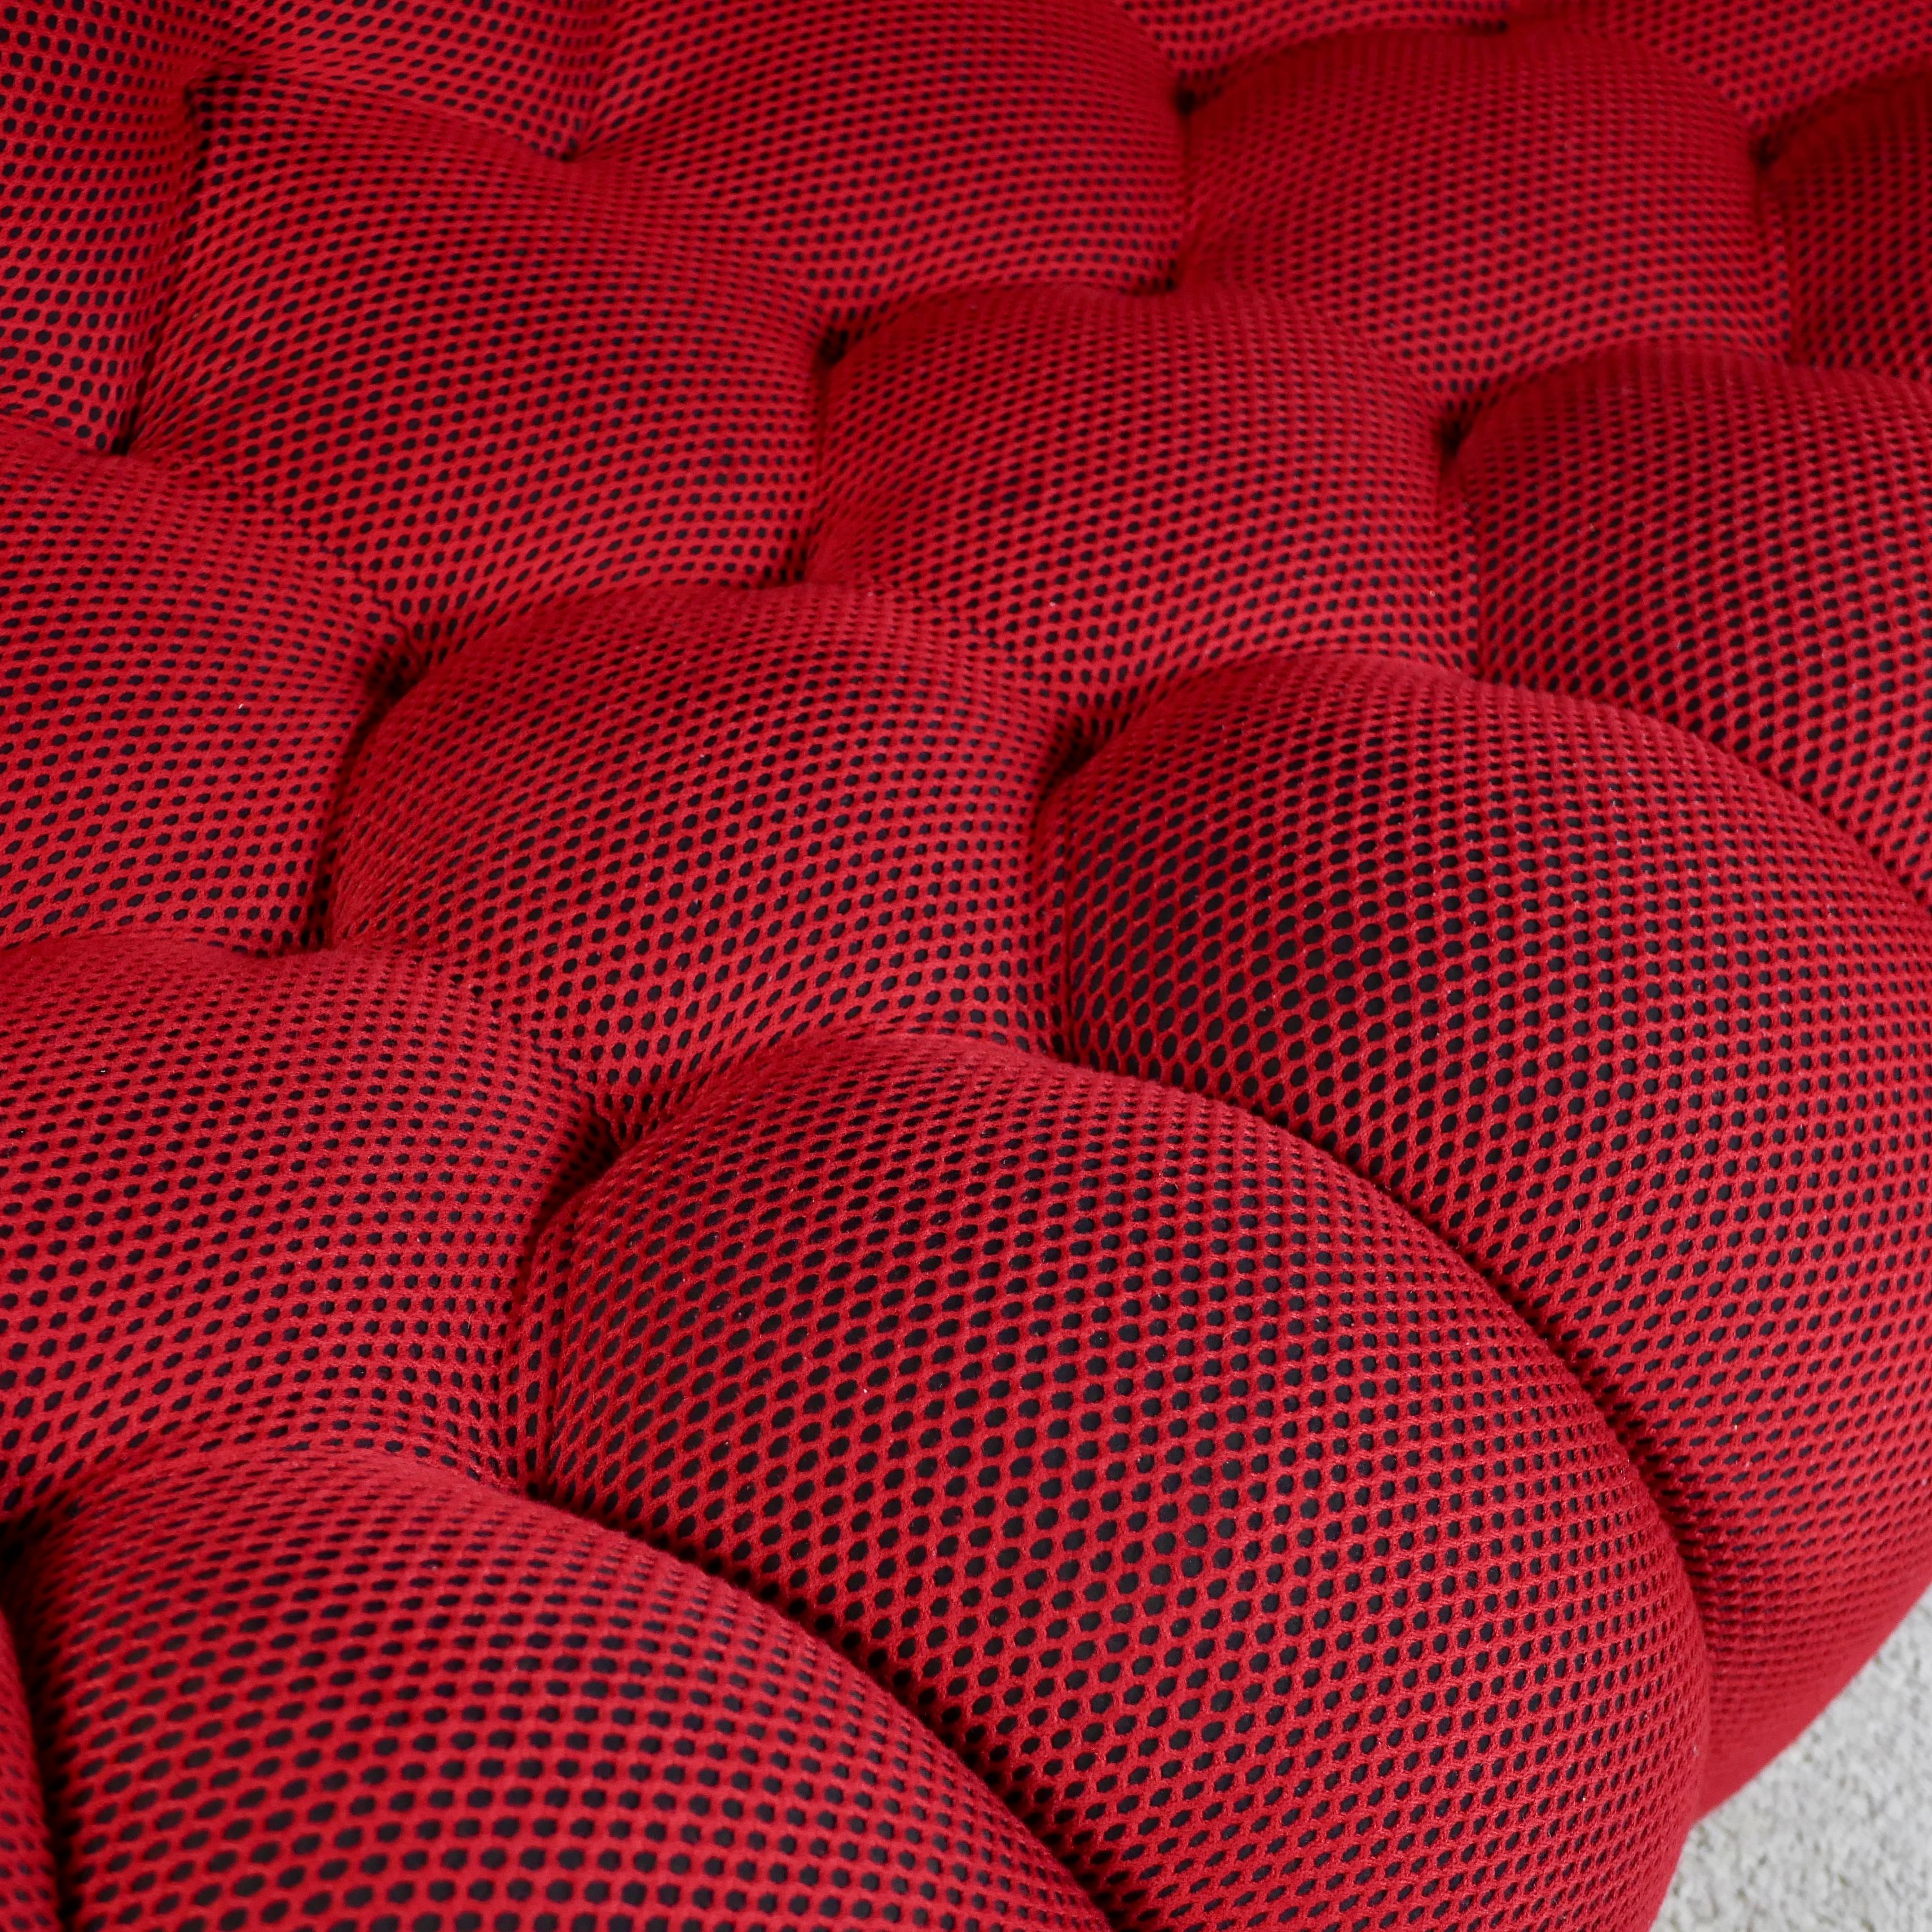 Bubble sofa Techno 3D fabric by Sacha Lakic for Roche Bobois, 2014 4